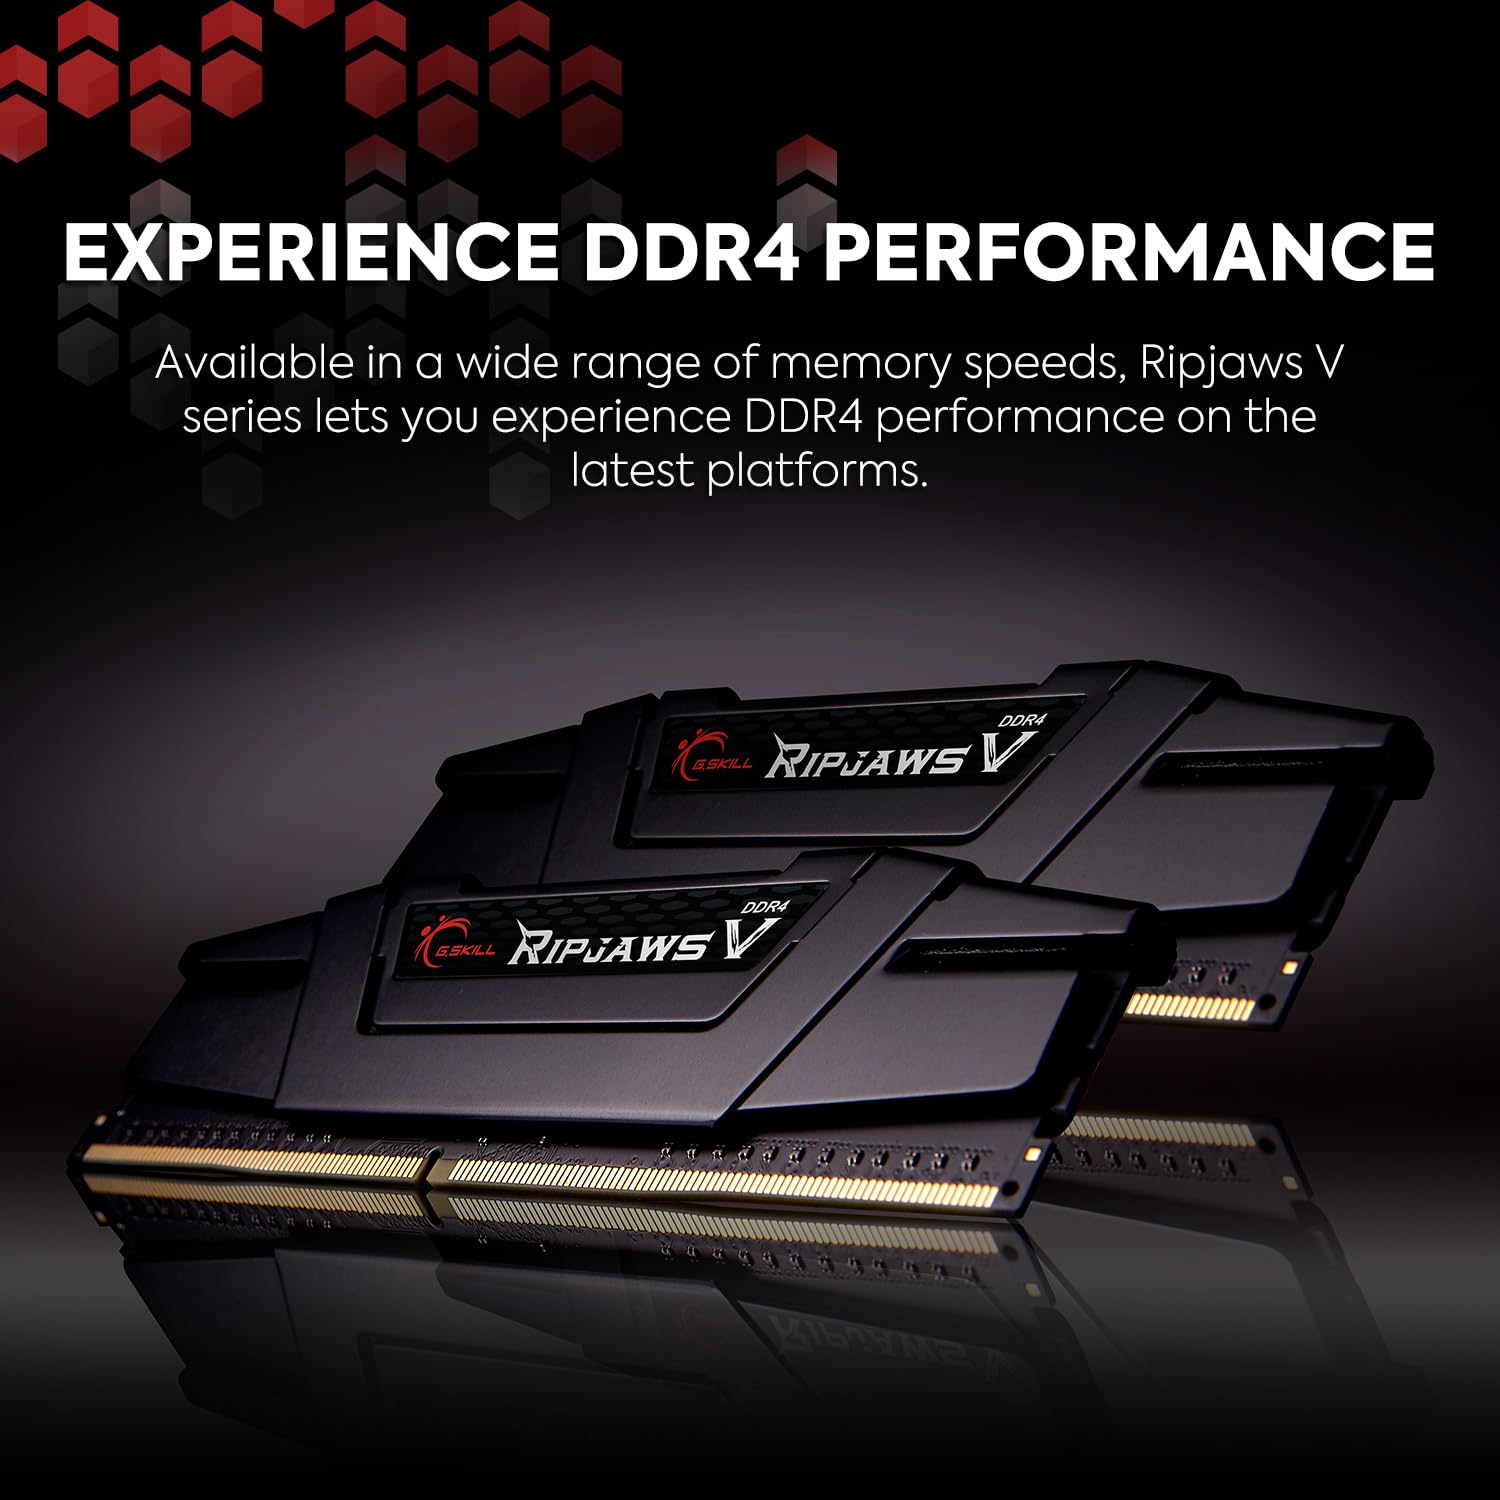 G.SKILL Ripjaws V Series (Intel XMP) DDR4 RAM 32GB (1x32GB) 3200MT/s CL16-18-18-38 1.35V Desktop Computer Memory UDIMM - Black (F4-3200C16S-32GVK)